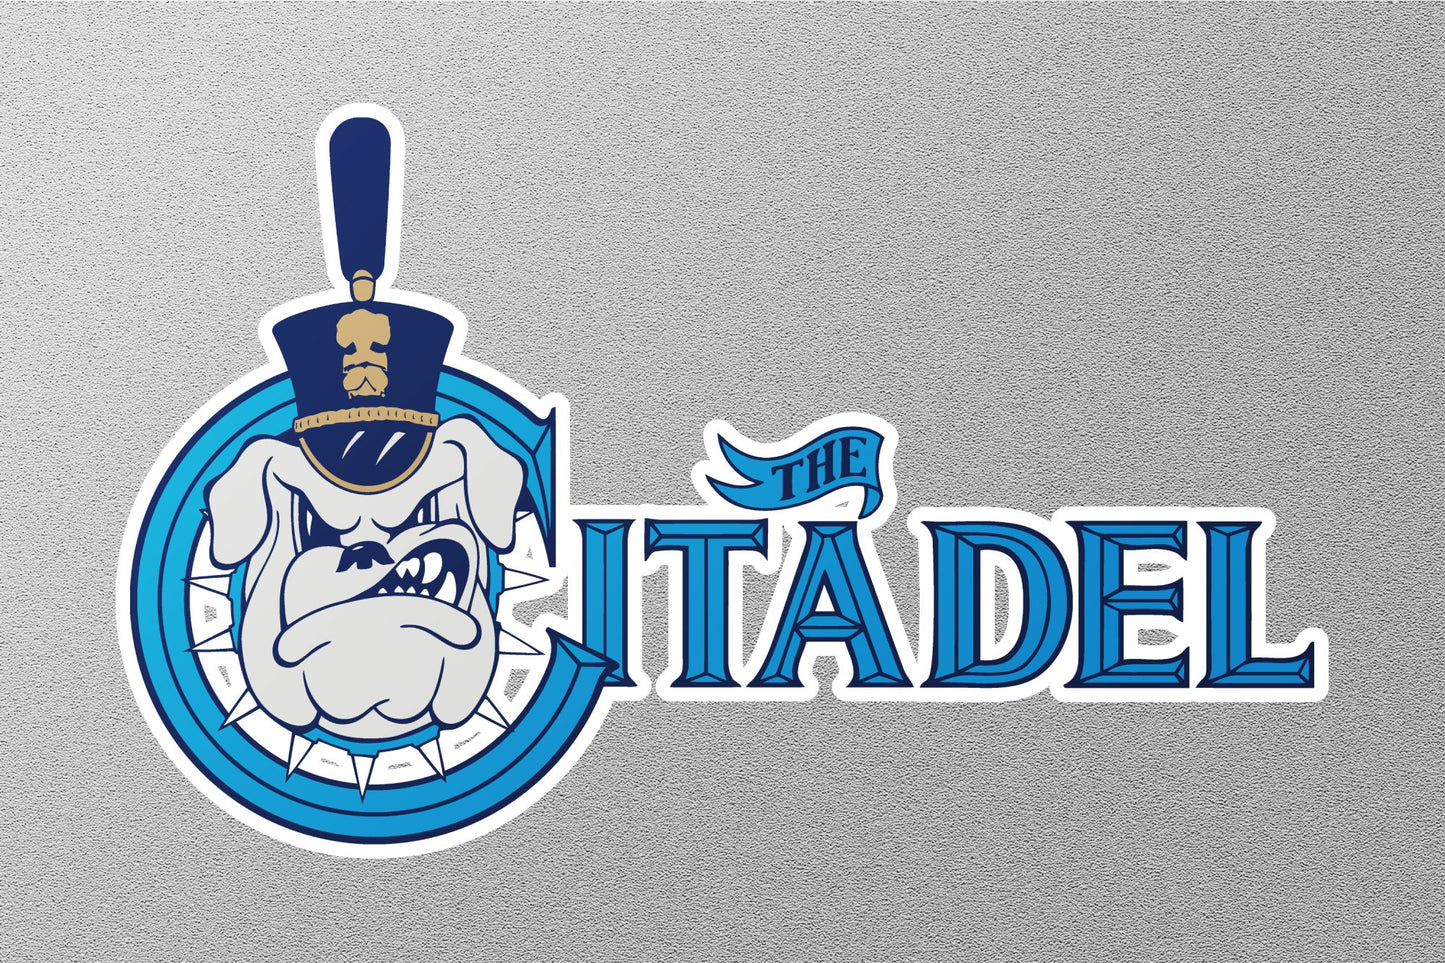 The Citadel Bulldogs College Sticker